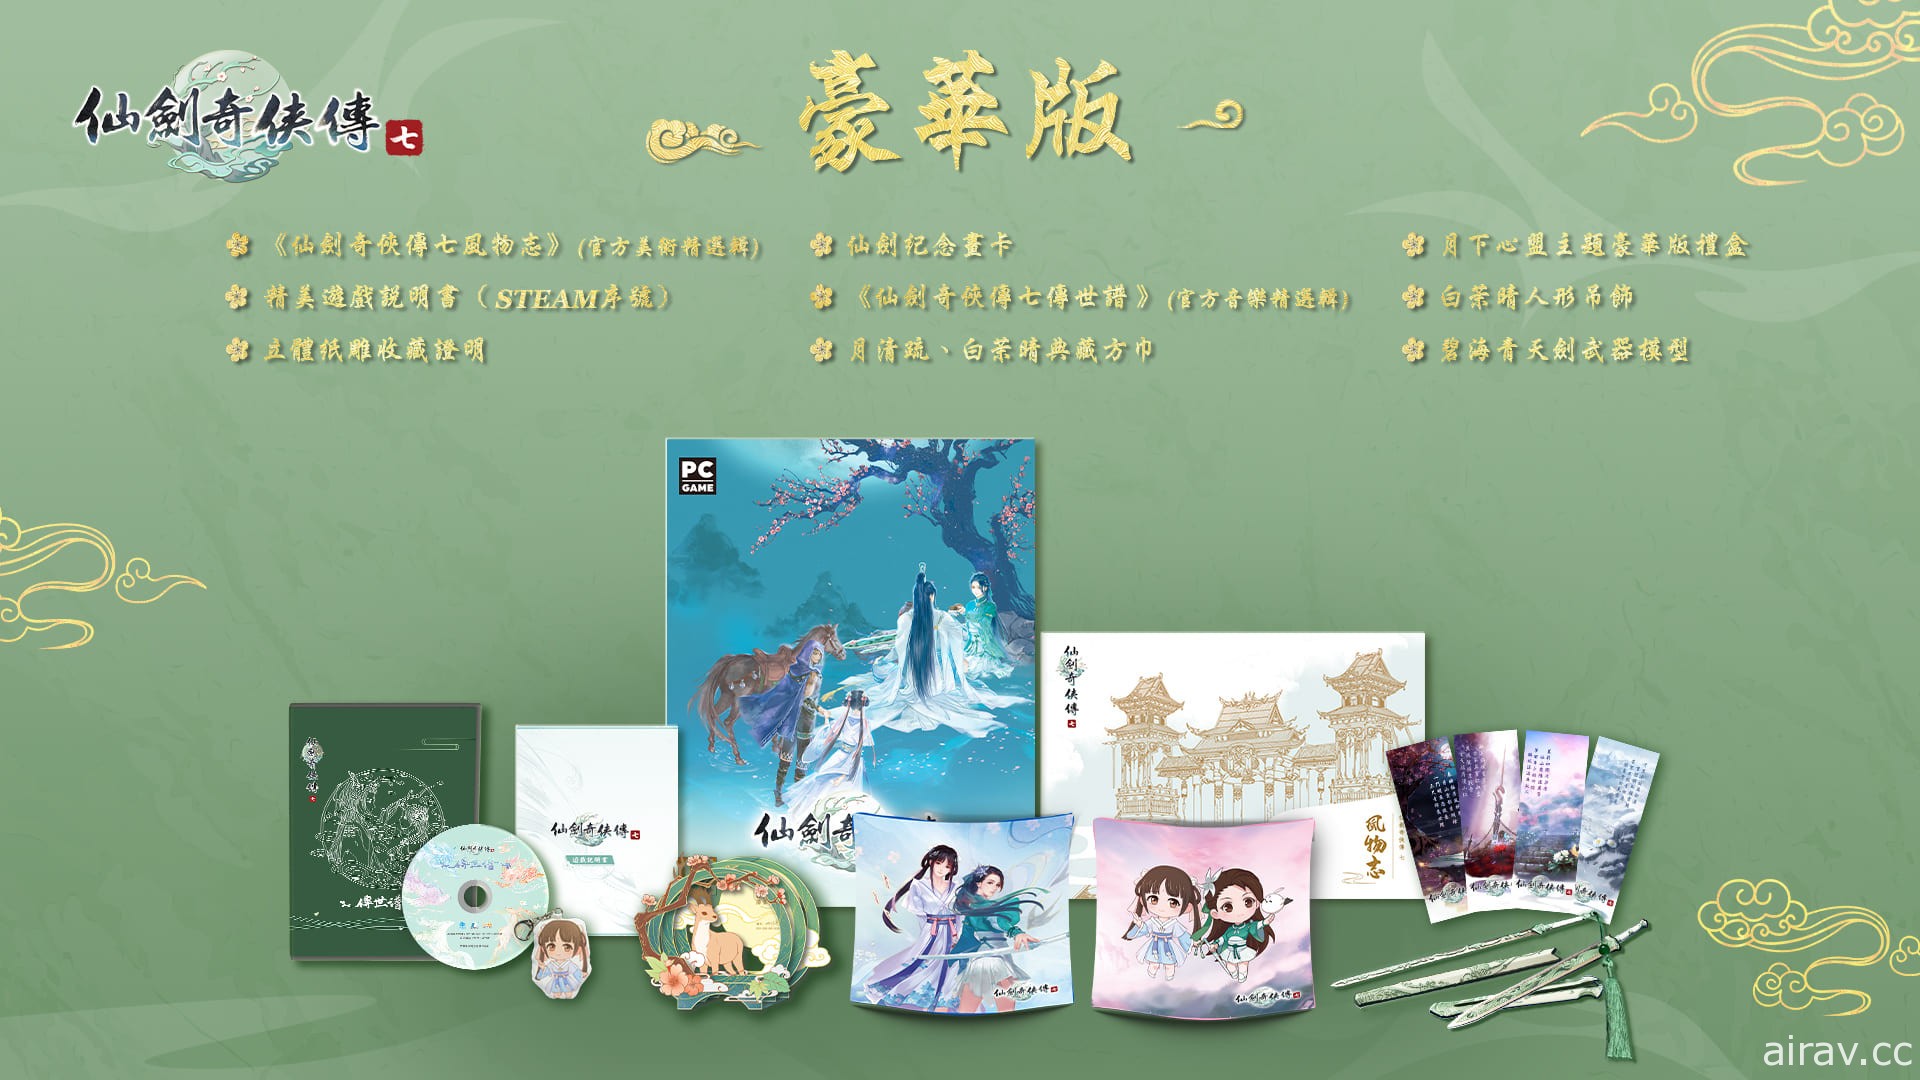 《仙剑奇侠传七》宣布 10 月 22 日上市 公开繁体中文实体产品内容